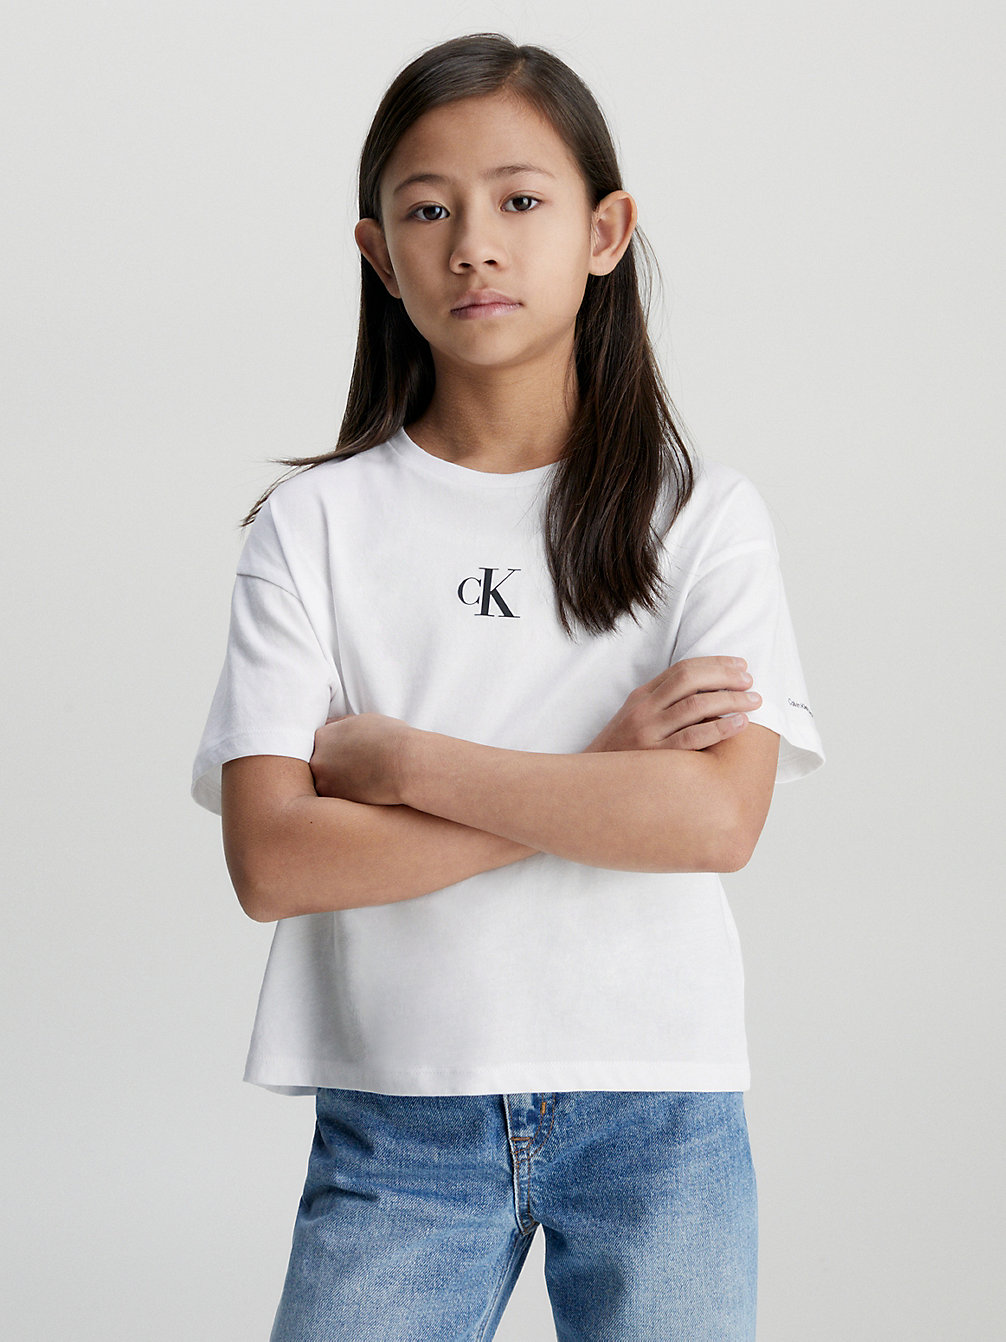 BRIGHT WHITE > Pudełkowy T-Shirt > undefined girls - Calvin Klein